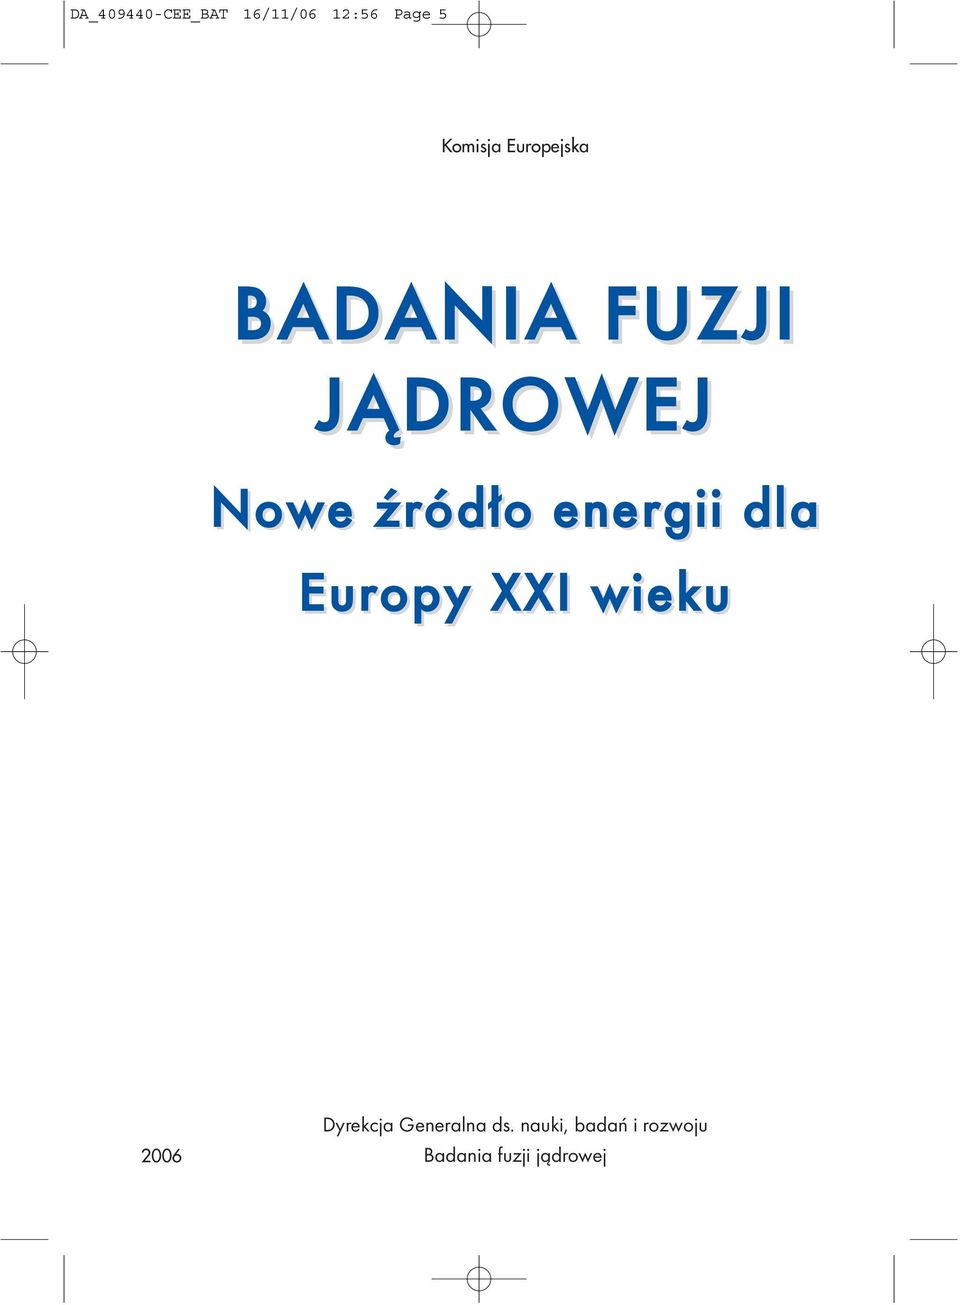 energii dla Europy XXI wieku 2006 Dyrekcja